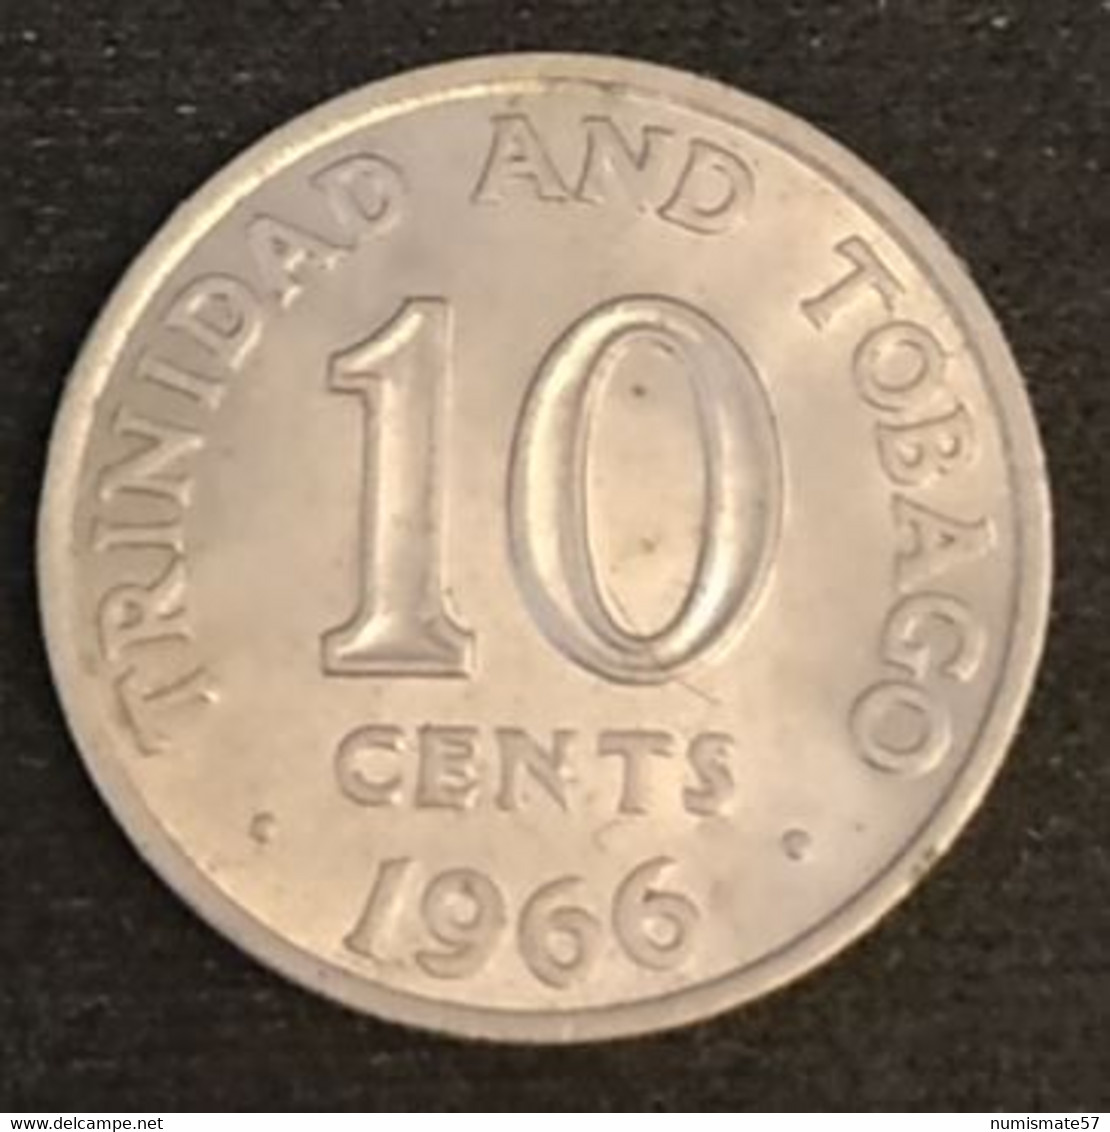 TRINIDAD AND TOBAGO - 10 CENTS 1966 - KM 3 - Trinité-et-Tobago - Trinité & Tobago